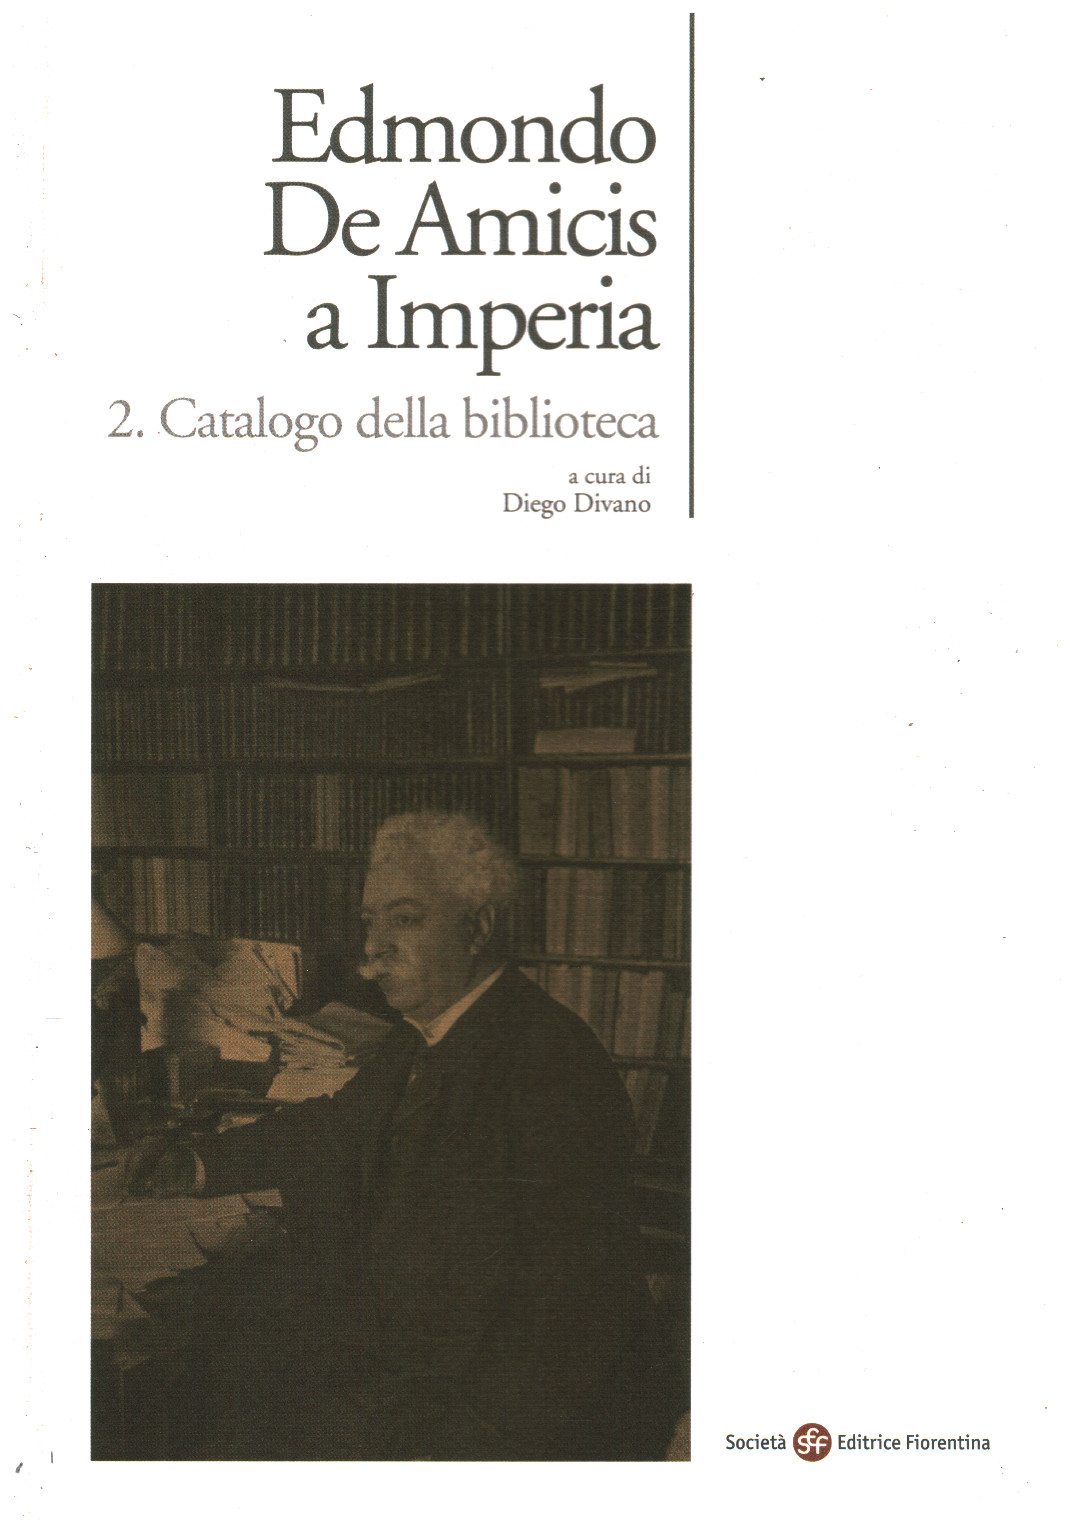 Edmondo De Amicis a Imperia. 2. Catalogo della bib, s.a.